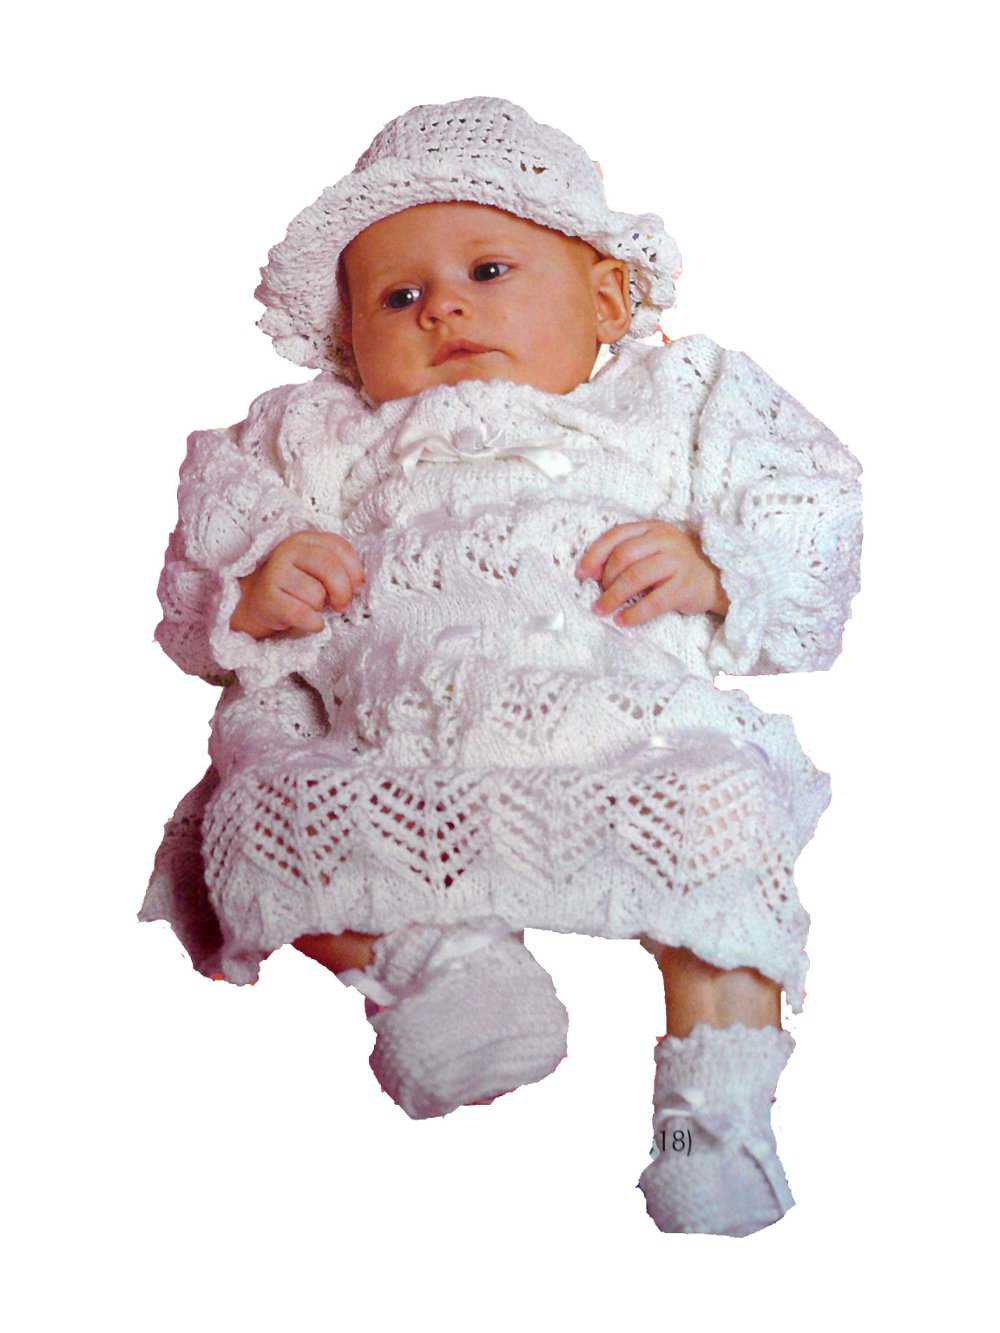 вязаное спицами платье для новорожденной девочки